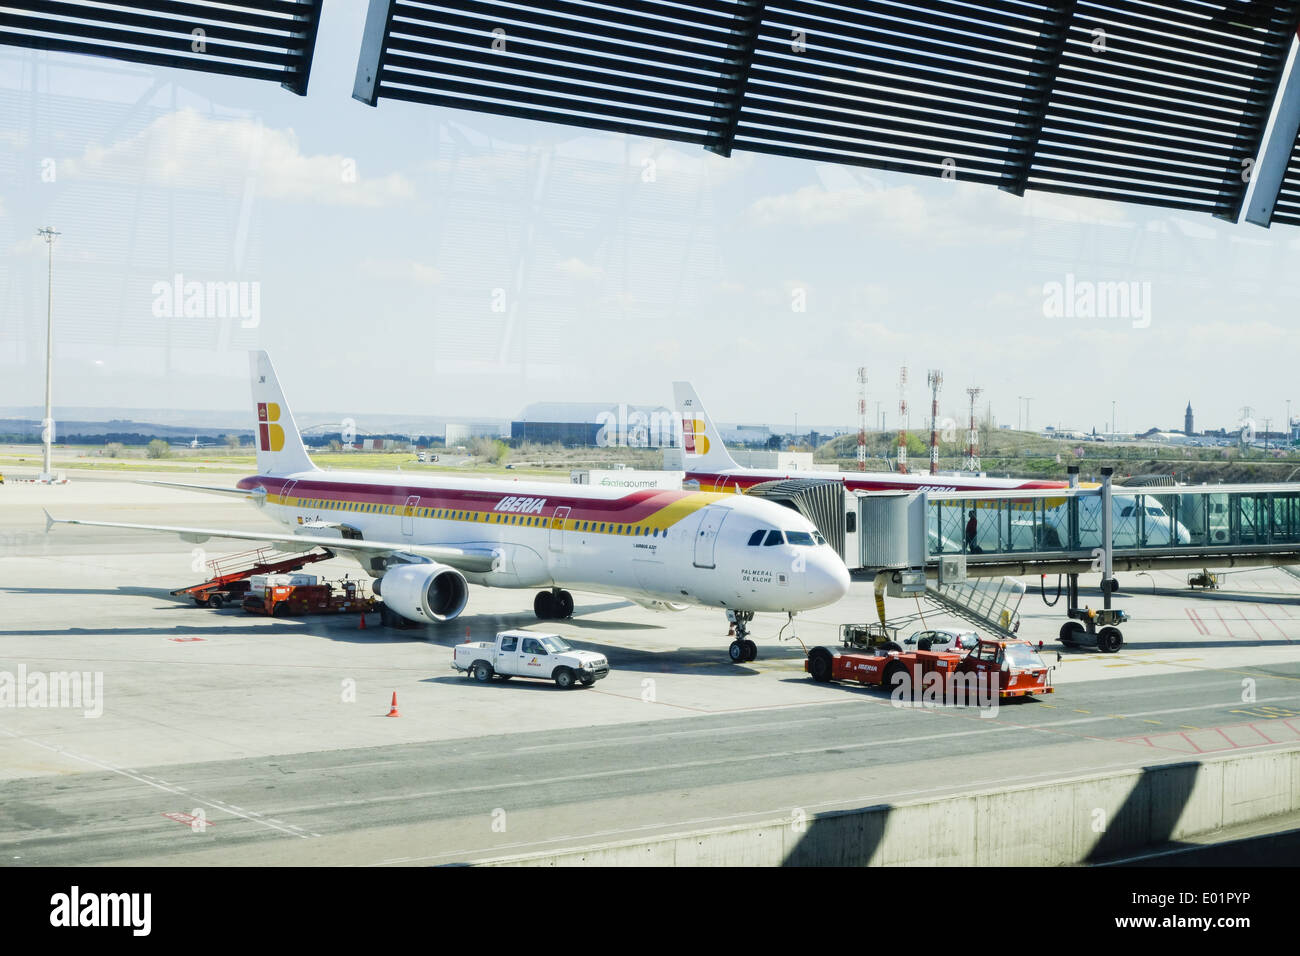 Aeropuerto de Madrid Barajas, Iberia, Spain, Madrid Stock Photo